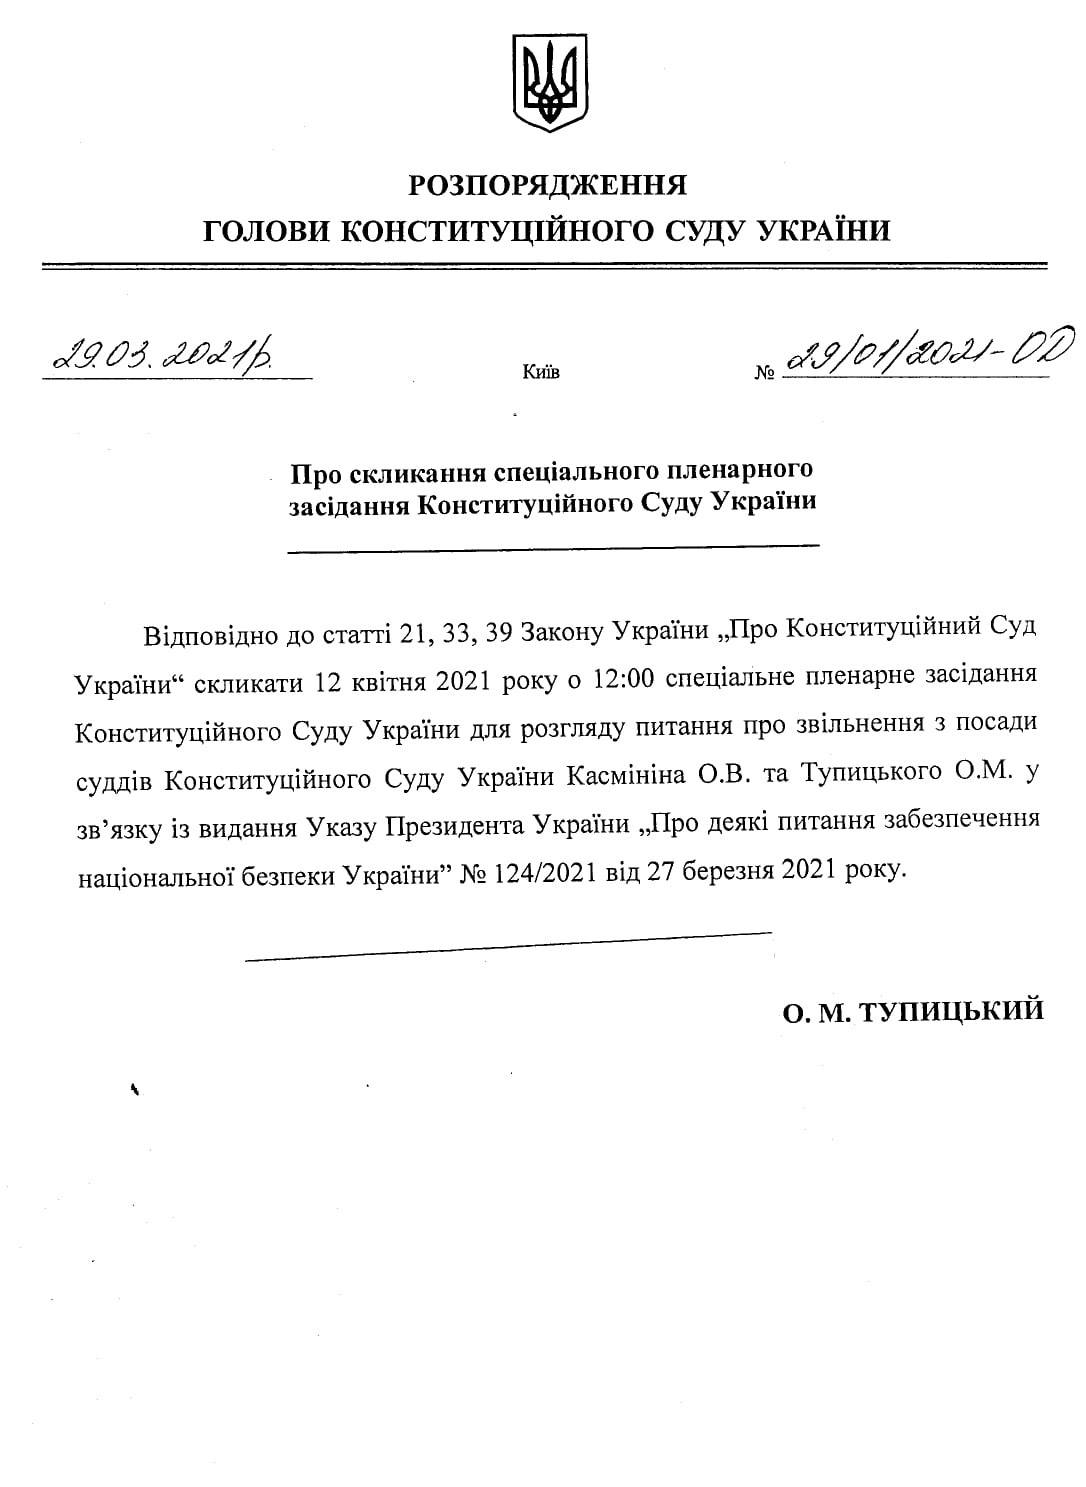 Пресс-служба КСУ называет Тупицкого главой суда. Он "собирает спецзаседание"